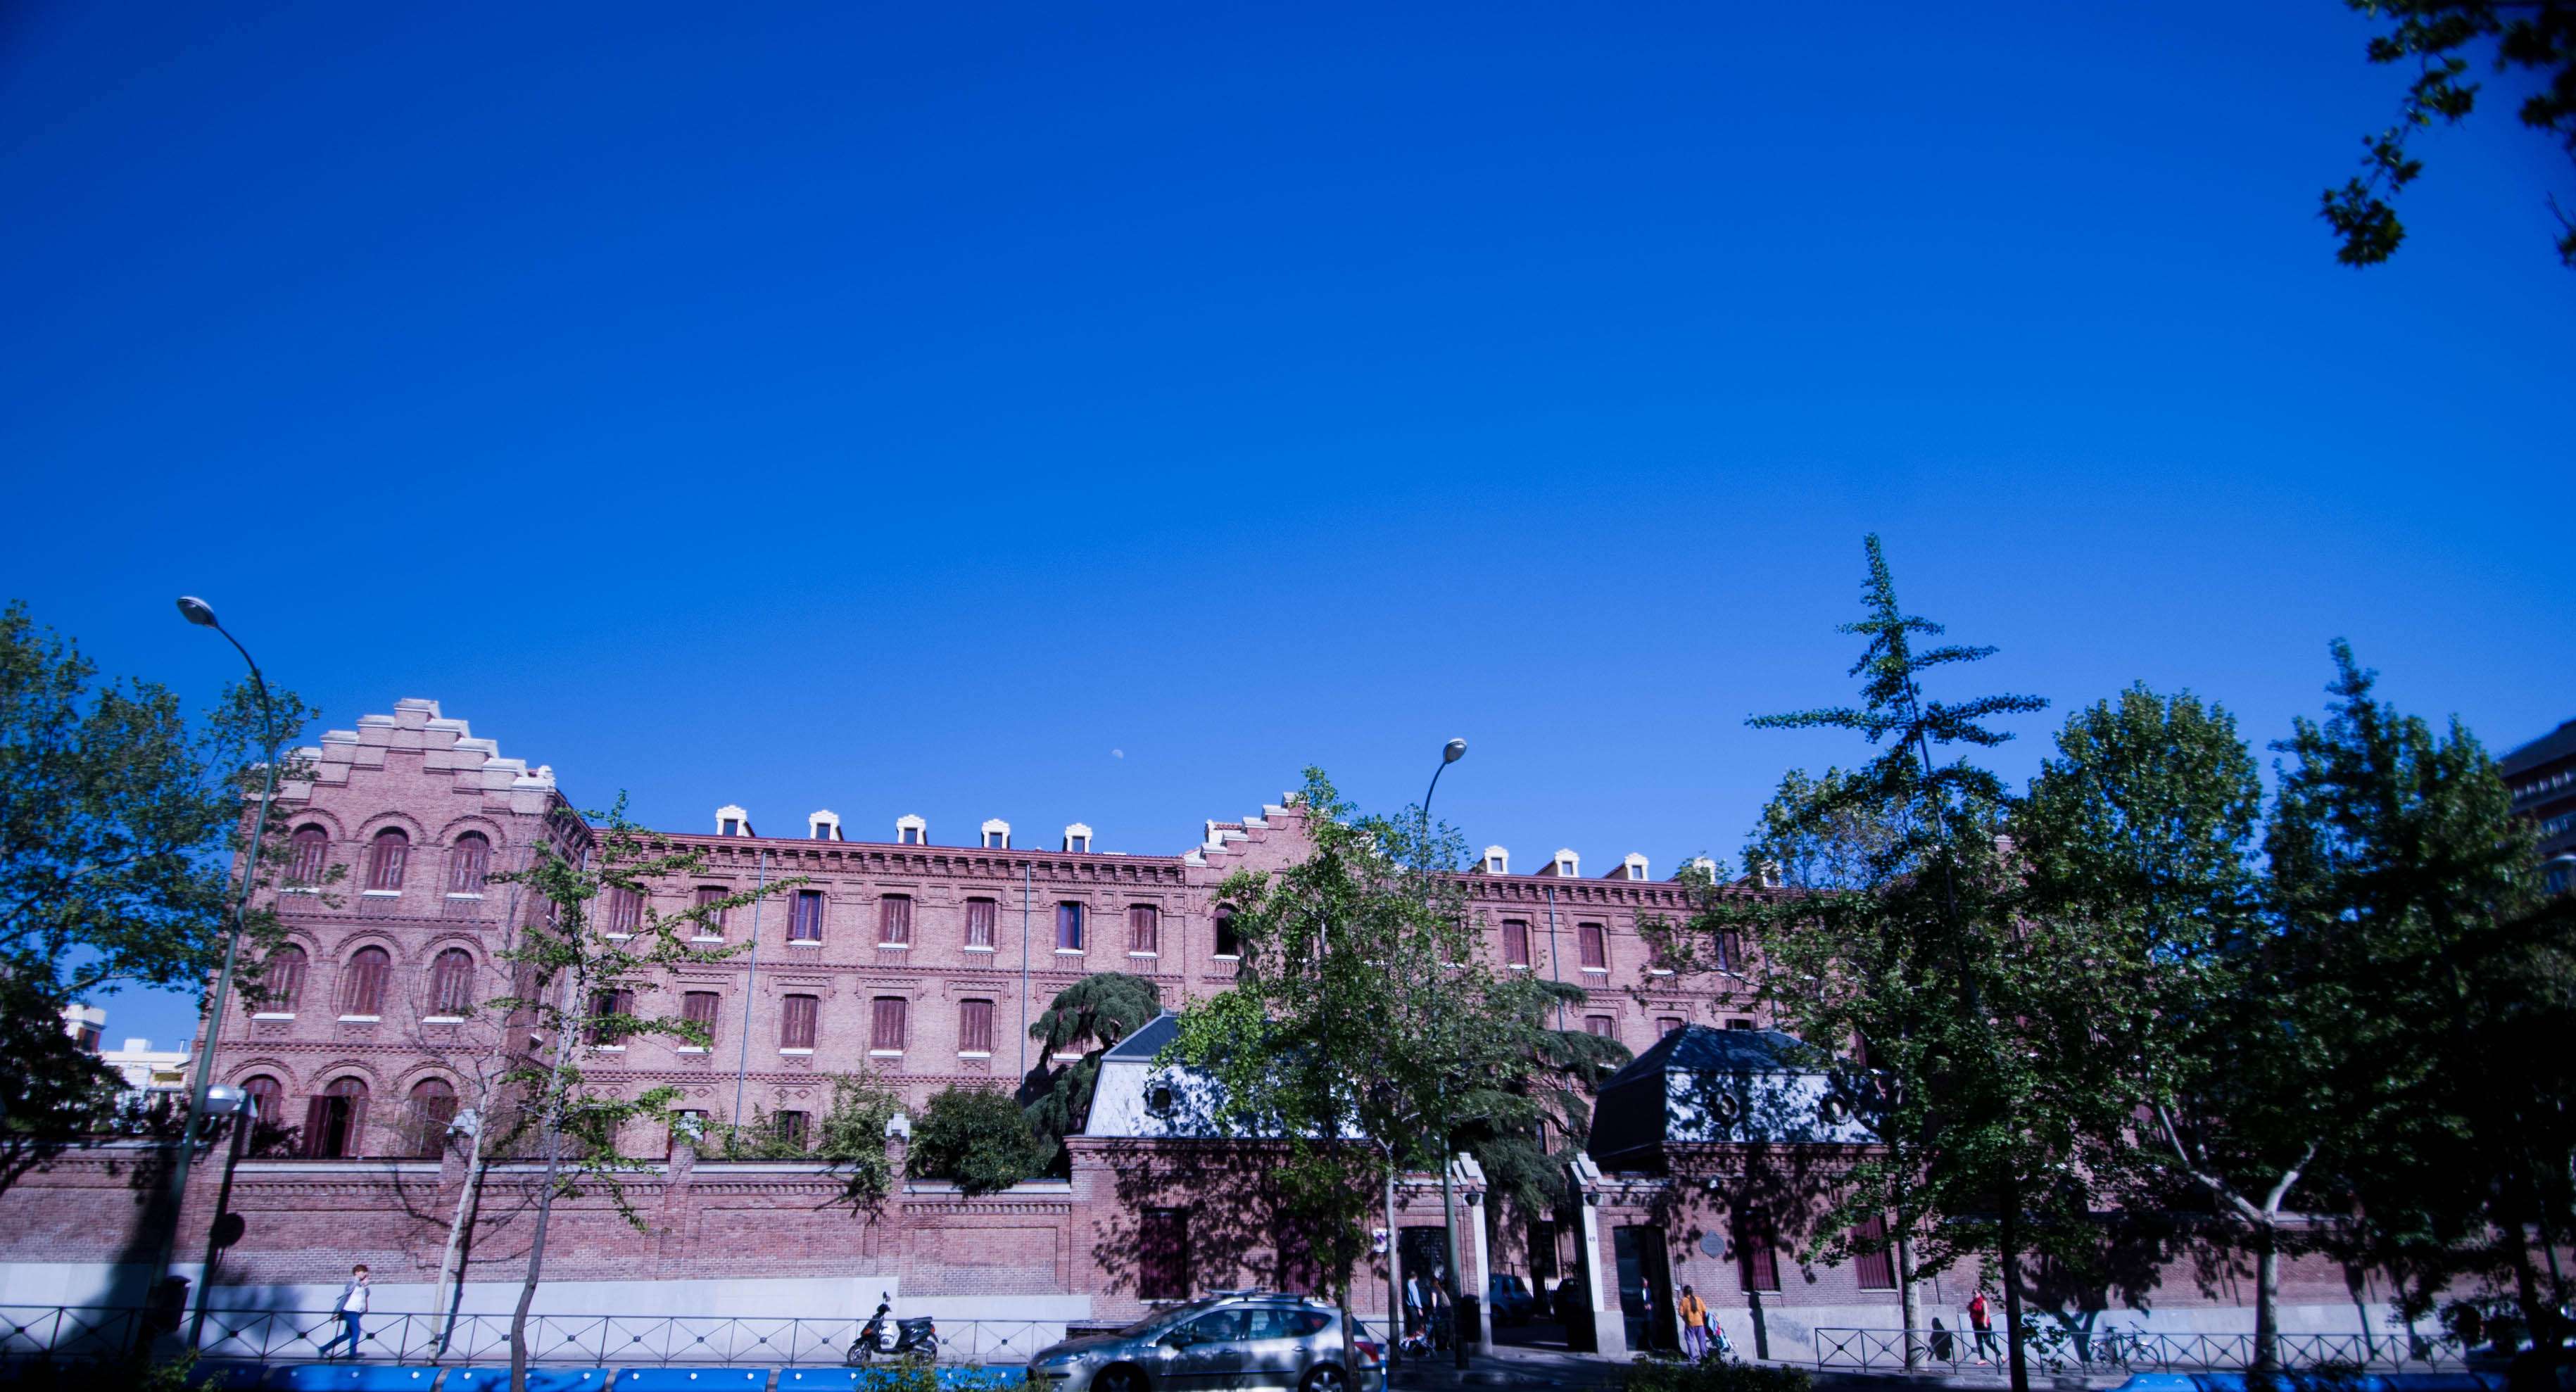 Paseos y Rutas por Madrid - Blogs of Spain - De Palacetes por el Barrio de Salamanca (5)